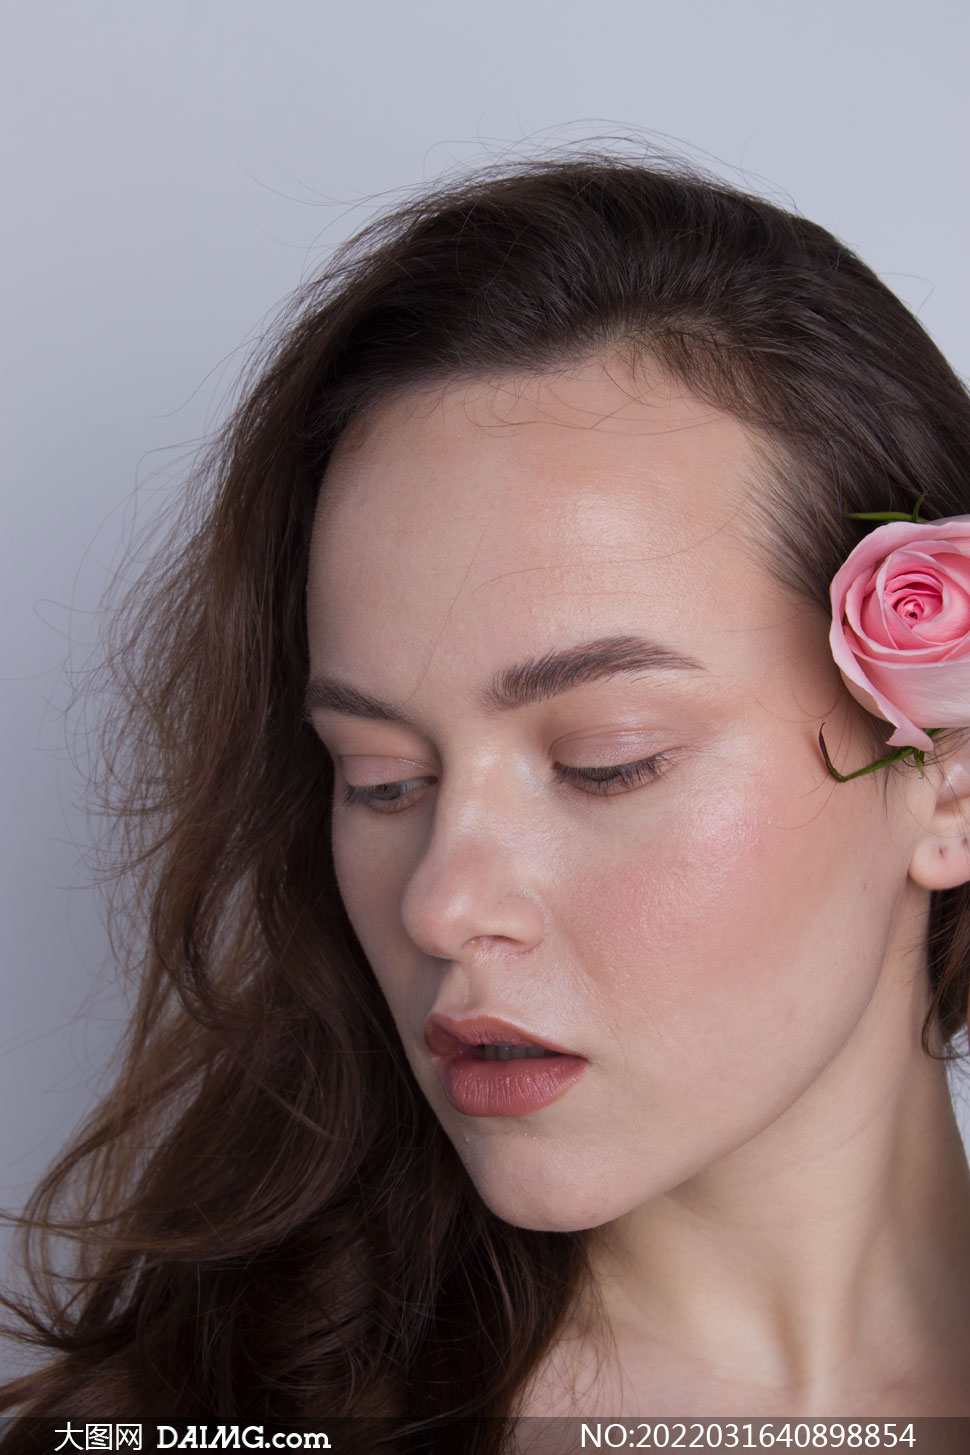 玫瑰花飾美女模特人物攝影原片素材